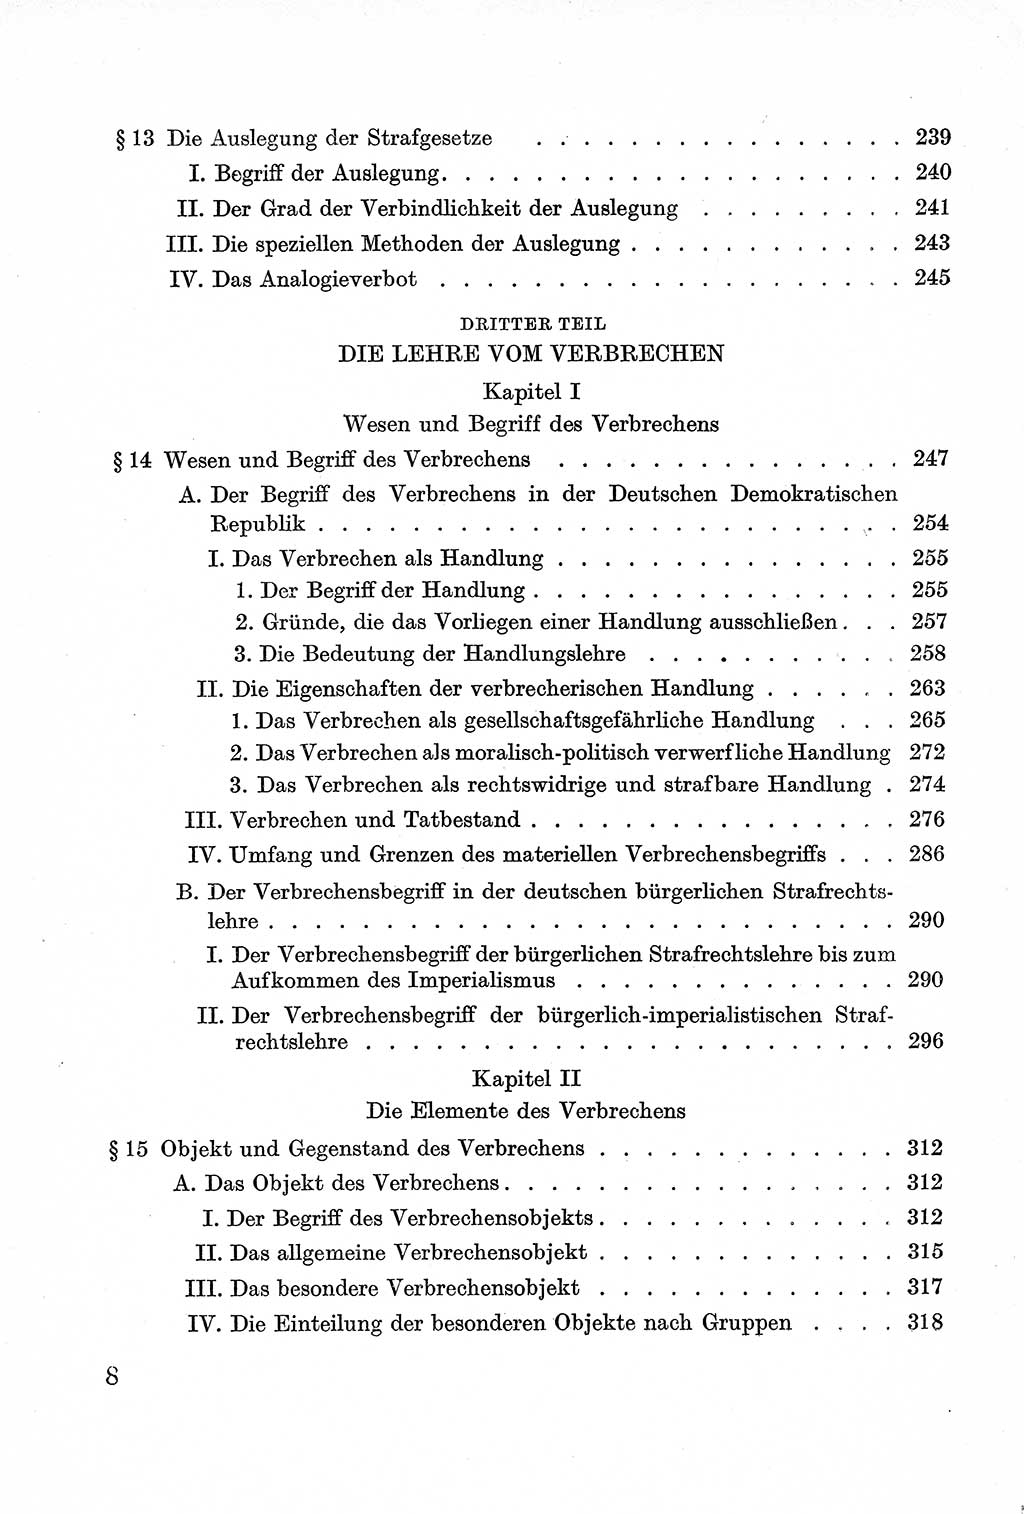 Lehrbuch des Strafrechts der Deutschen Demokratischen Republik (DDR), Allgemeiner Teil 1957, Seite 8 (Lb. Strafr. DDR AT 1957, S. 8)